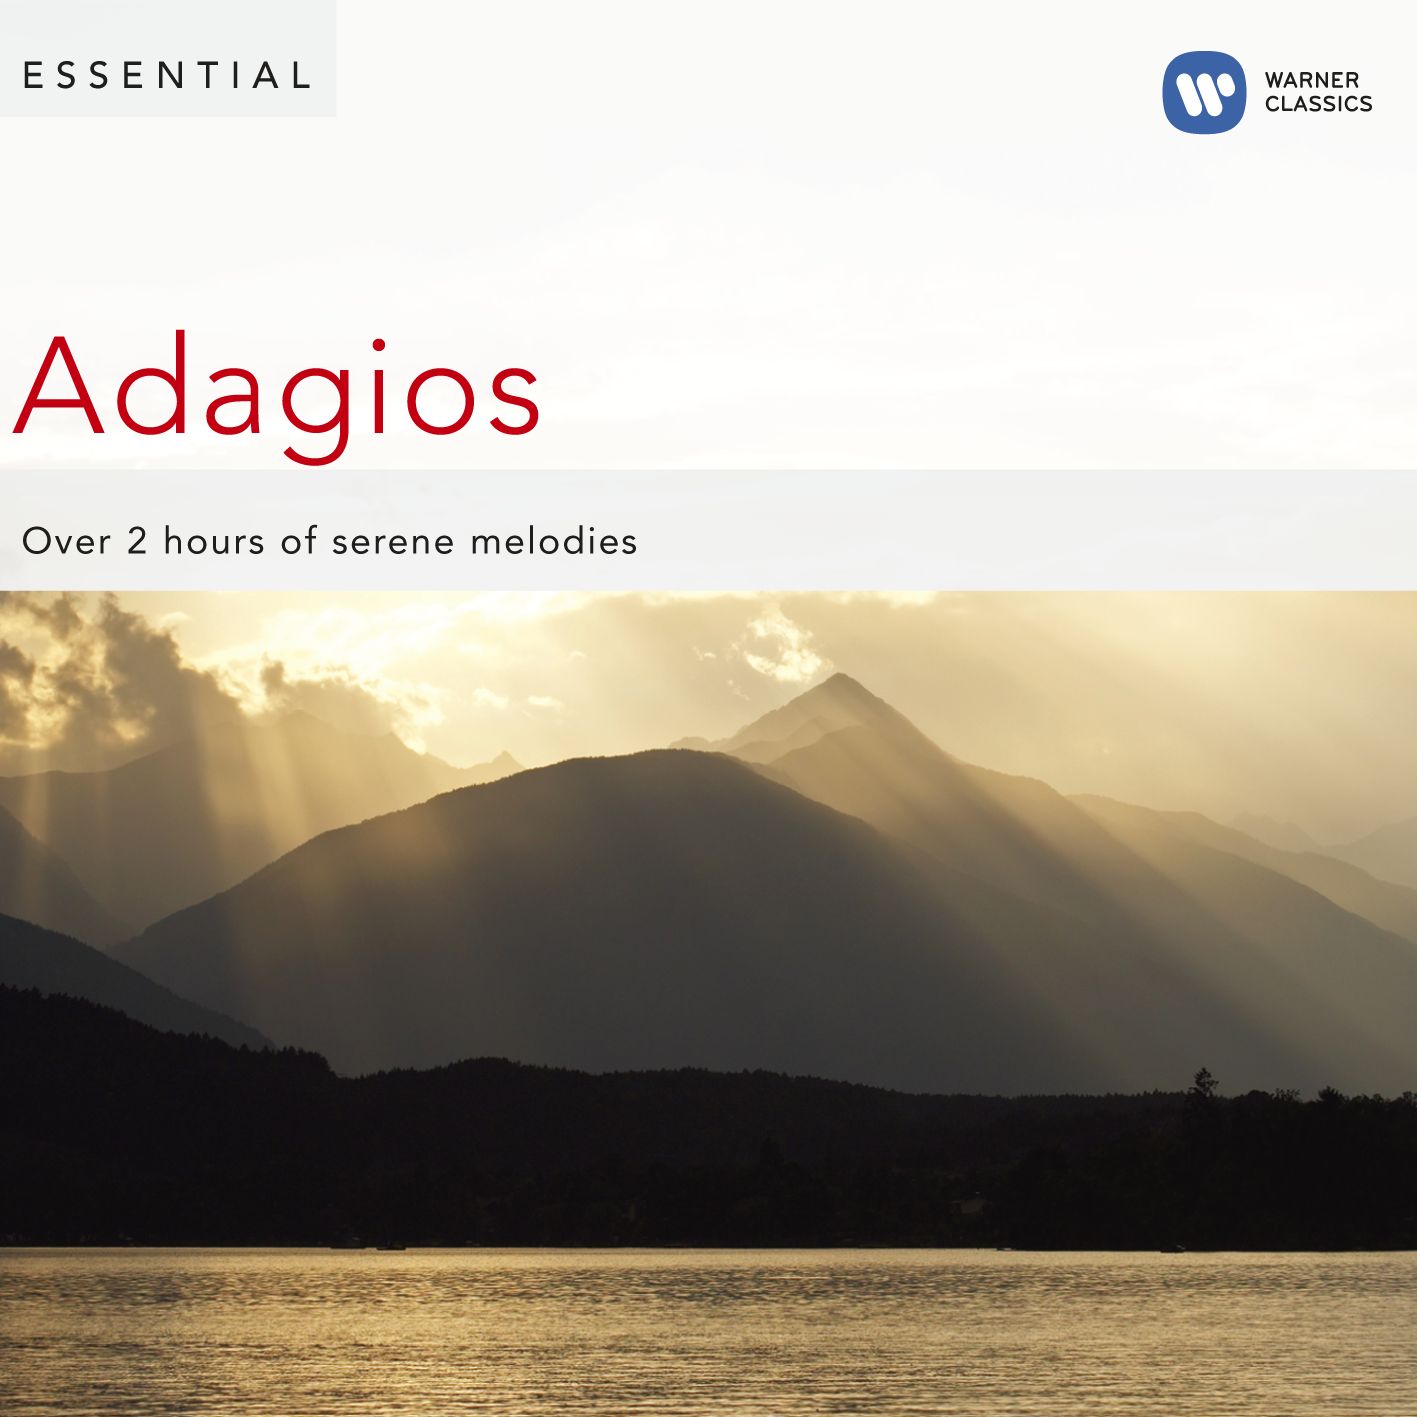 Adagio for Strings and Organ in G Minor, "Albinoni's Adagio" (Excerpt)